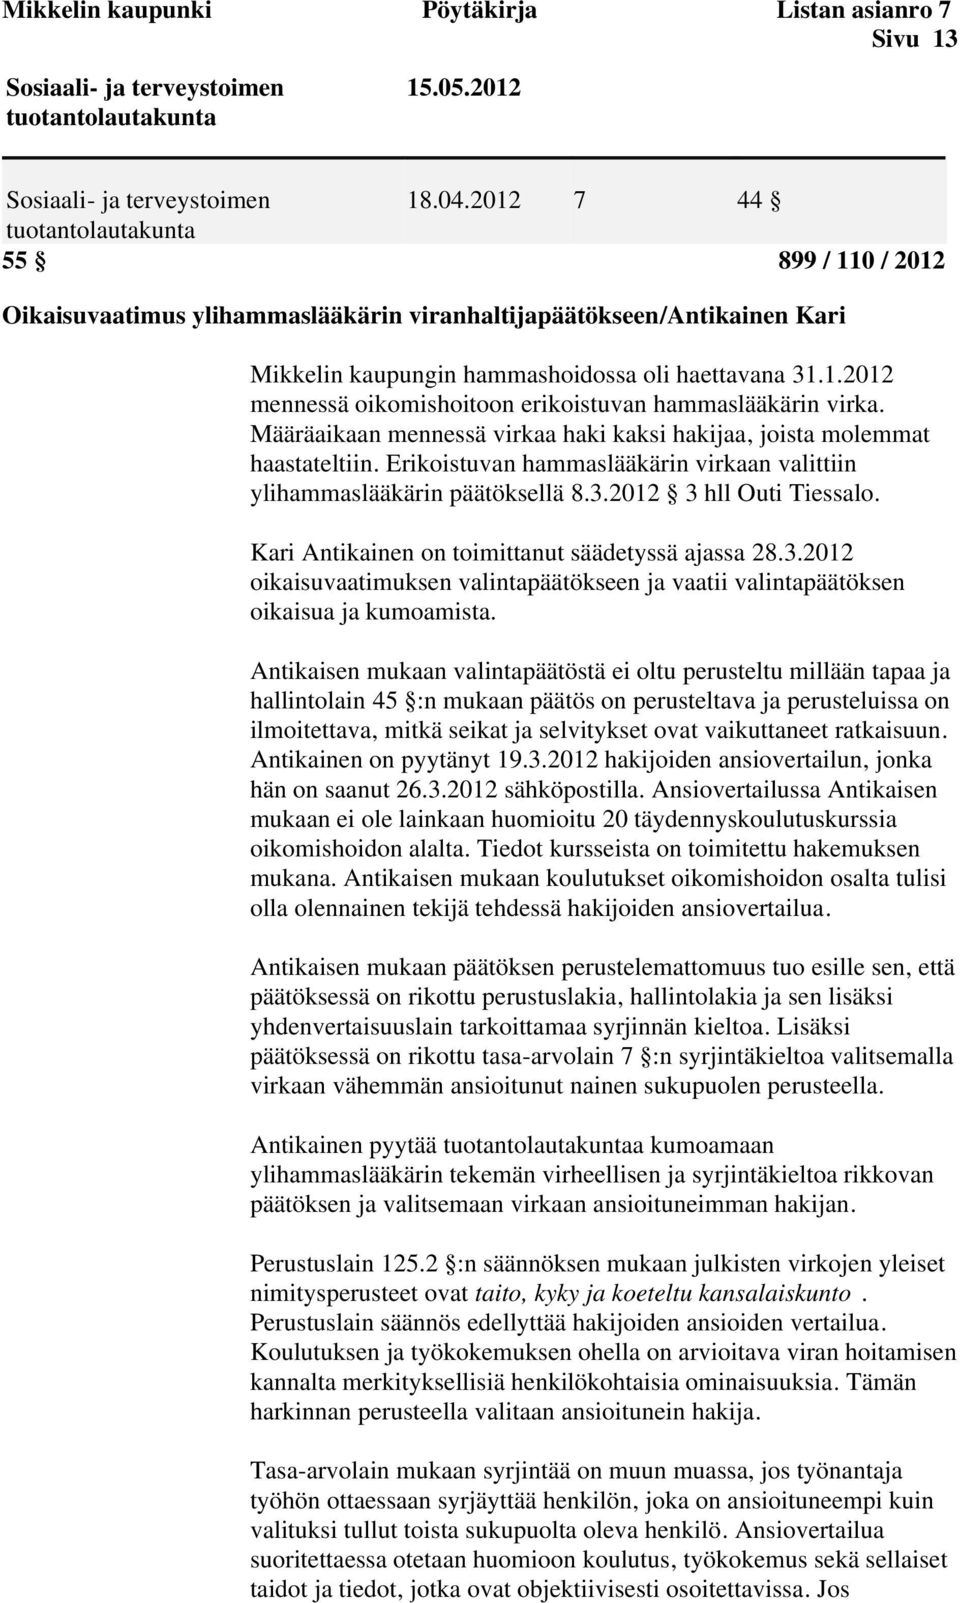 Määräaikaan mennessä virkaa haki kaksi hakijaa, joista molemmat haastateltiin. Erikoistuvan hammaslääkärin virkaan valittiin ylihammaslääkärin päätöksellä 8.3.2012 3 hll Outi Tiessalo.